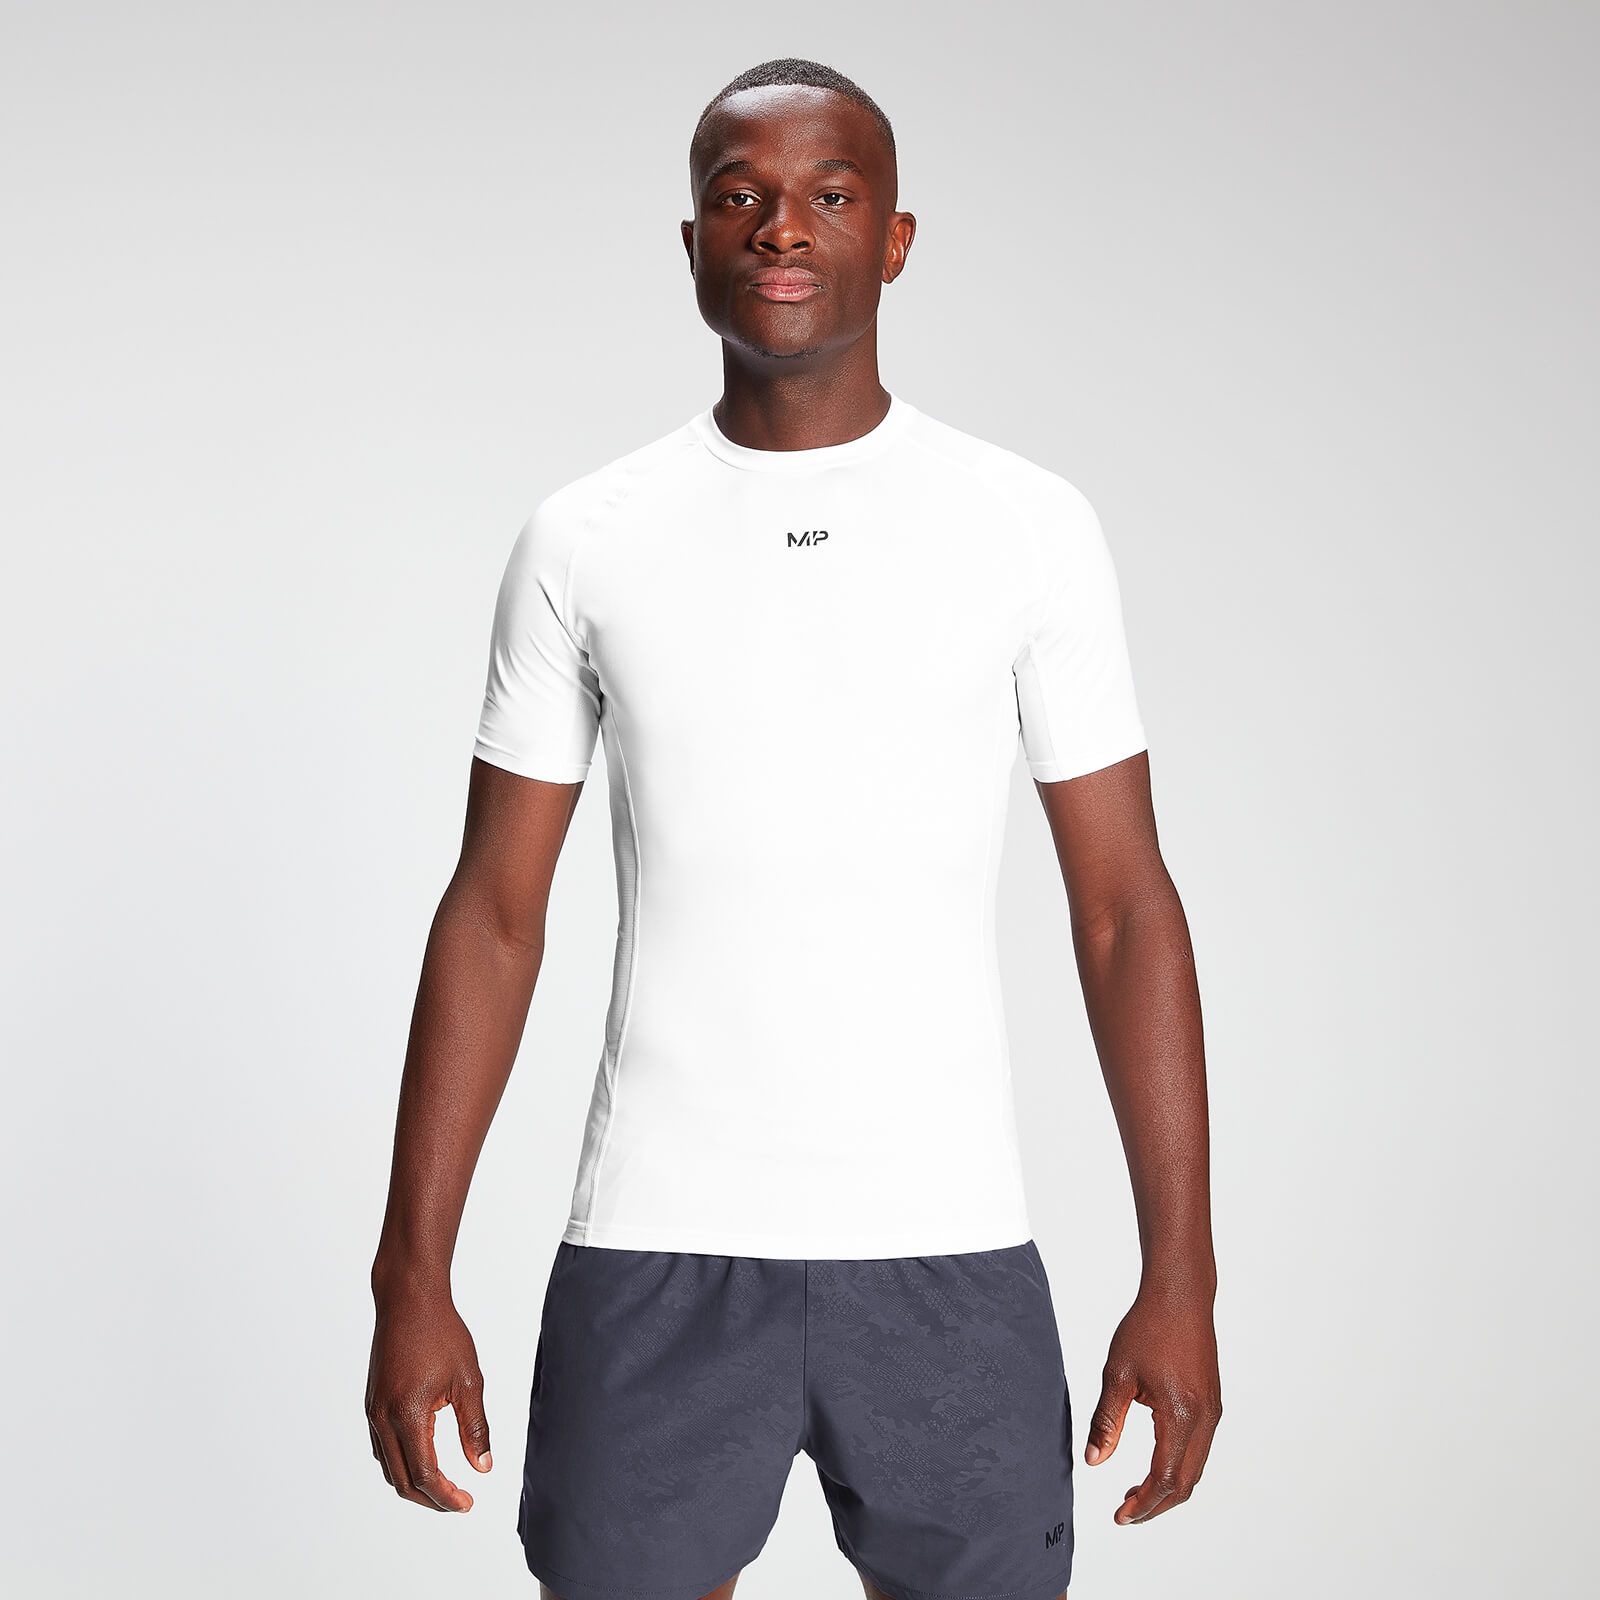 Mp pánské Engage podvlékací tričko s krátkým rukávem - Bílé - XXXL